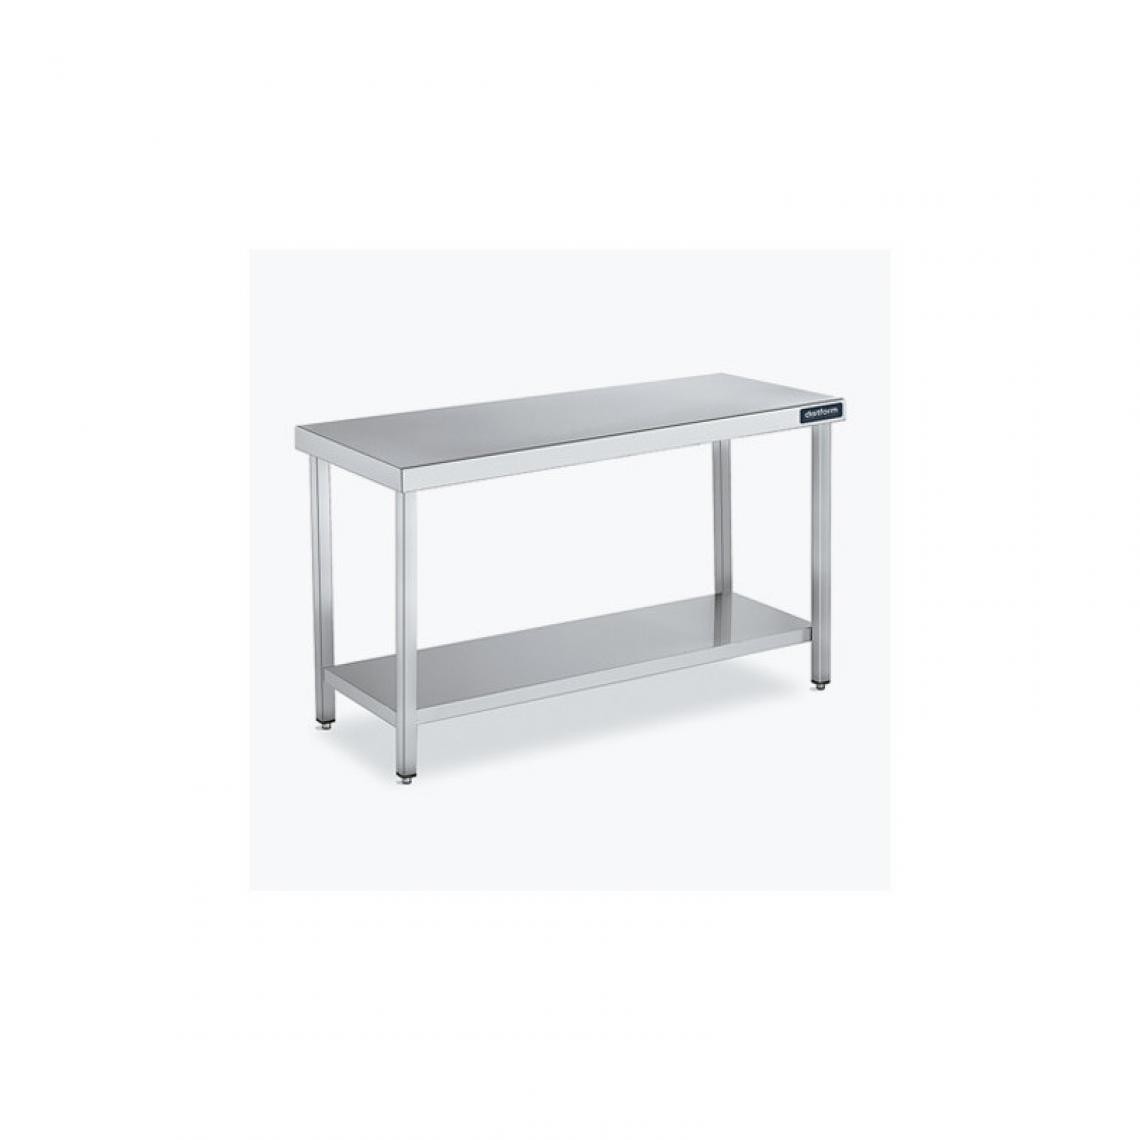 DISTFORM - Table Central 600x550 avec Étagère - Distform - Inox 18/10600x550x850mm - Tables à manger